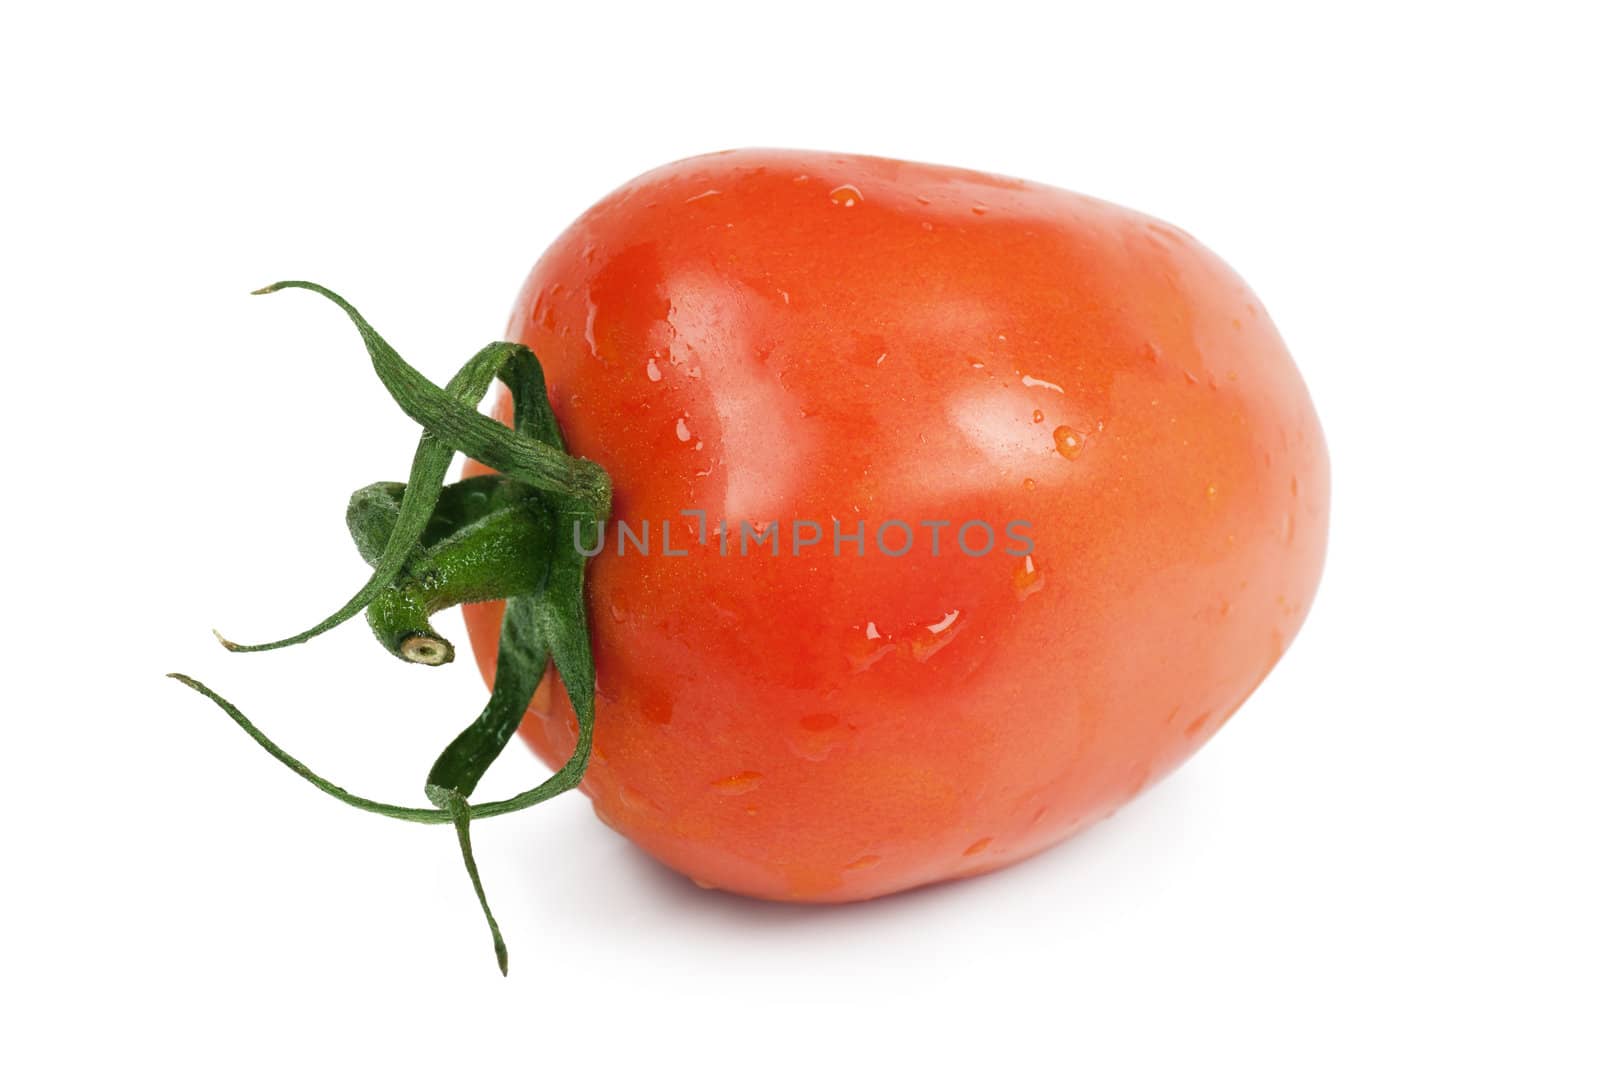 Tomato by AGorohov